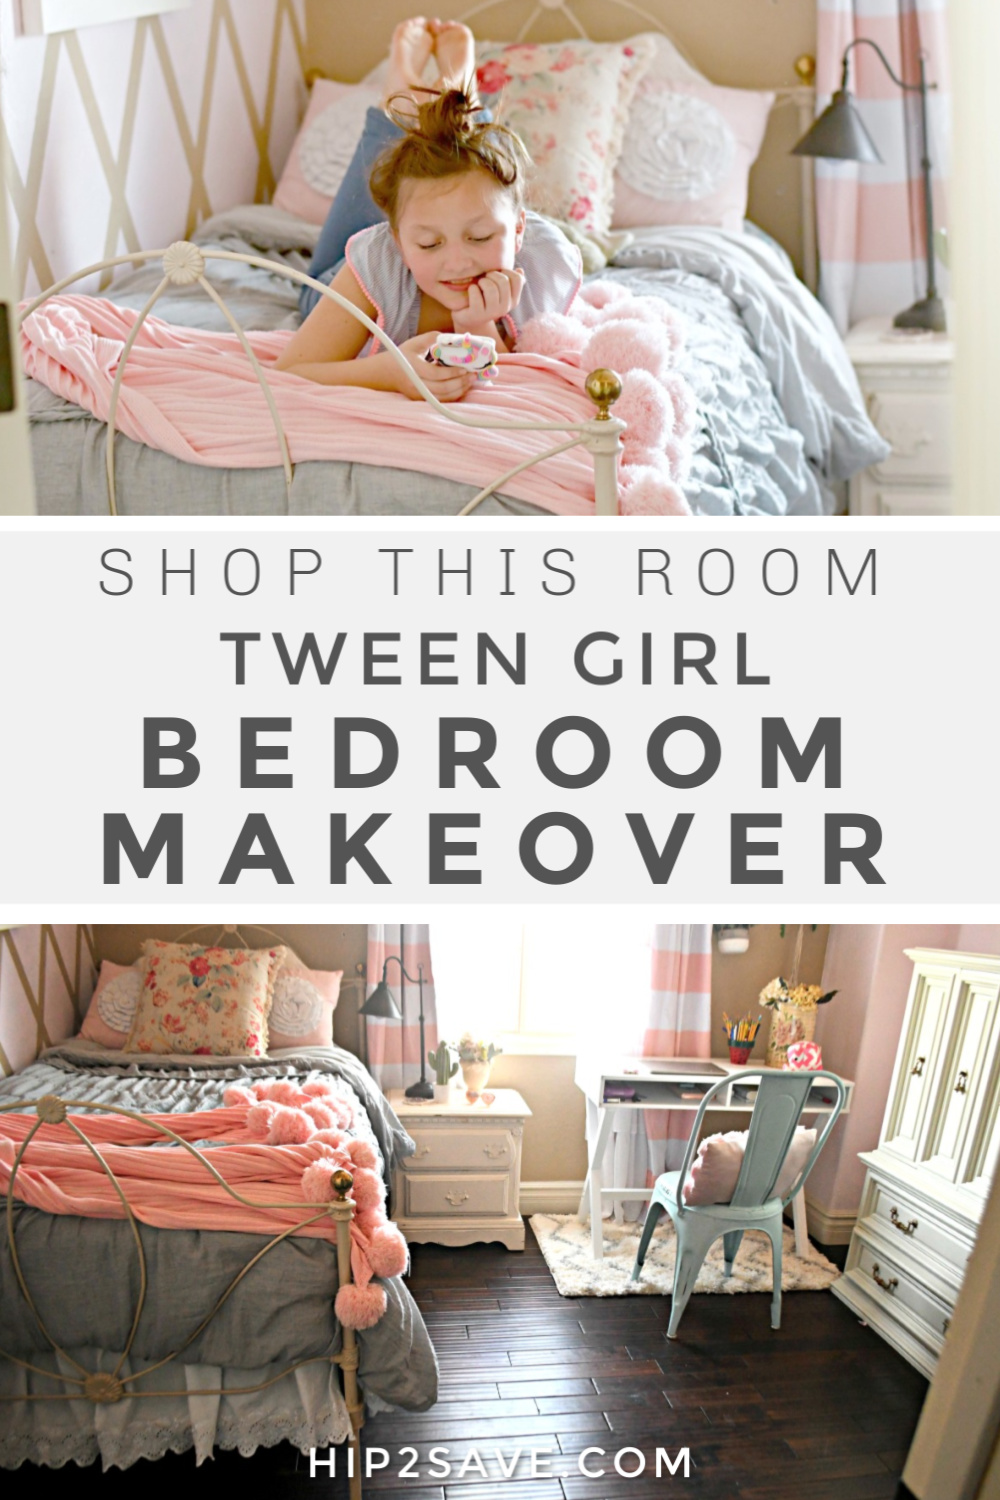 DIY: Transform Little Girl's Room into Tween Bedroom | Hip2Save